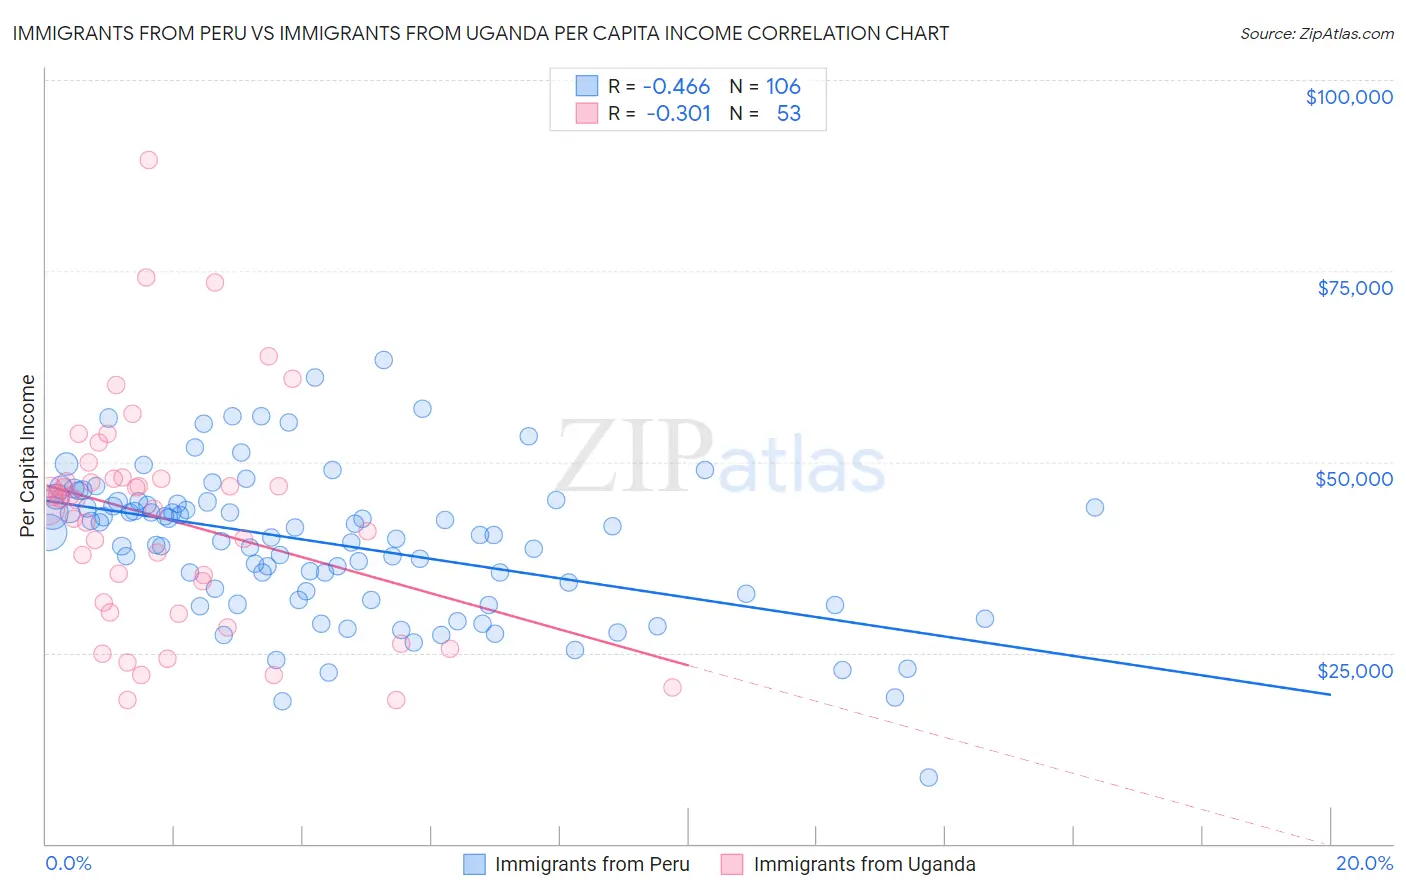 Immigrants from Peru vs Immigrants from Uganda Per Capita Income